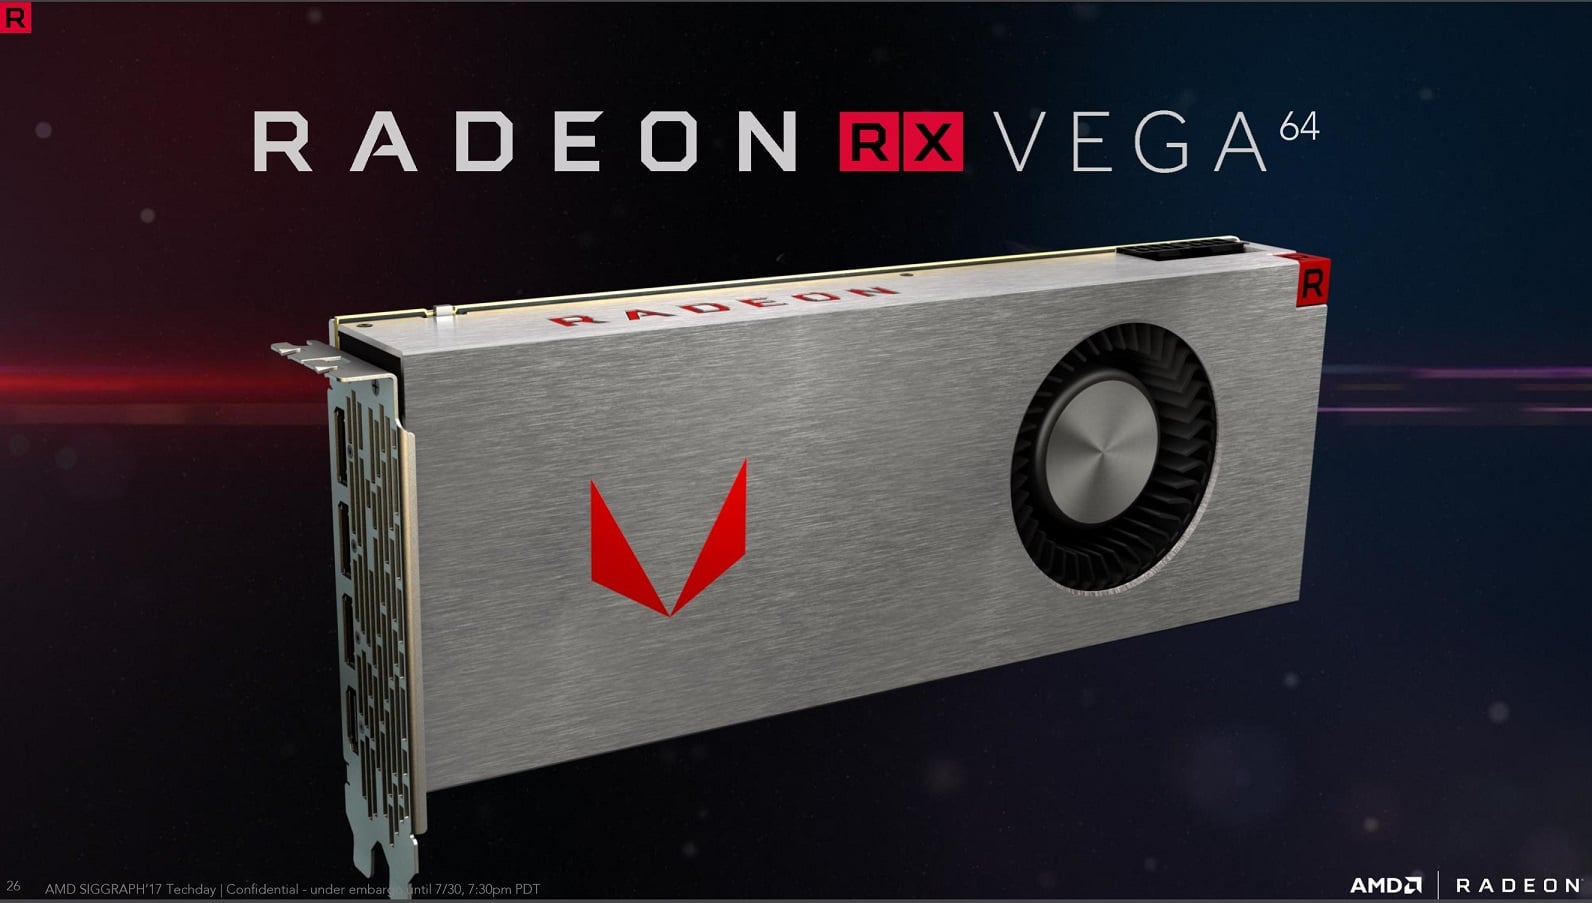 AMD Radeon RX Vega 64, RX Vega 56 Revealed, Launching Aug 14